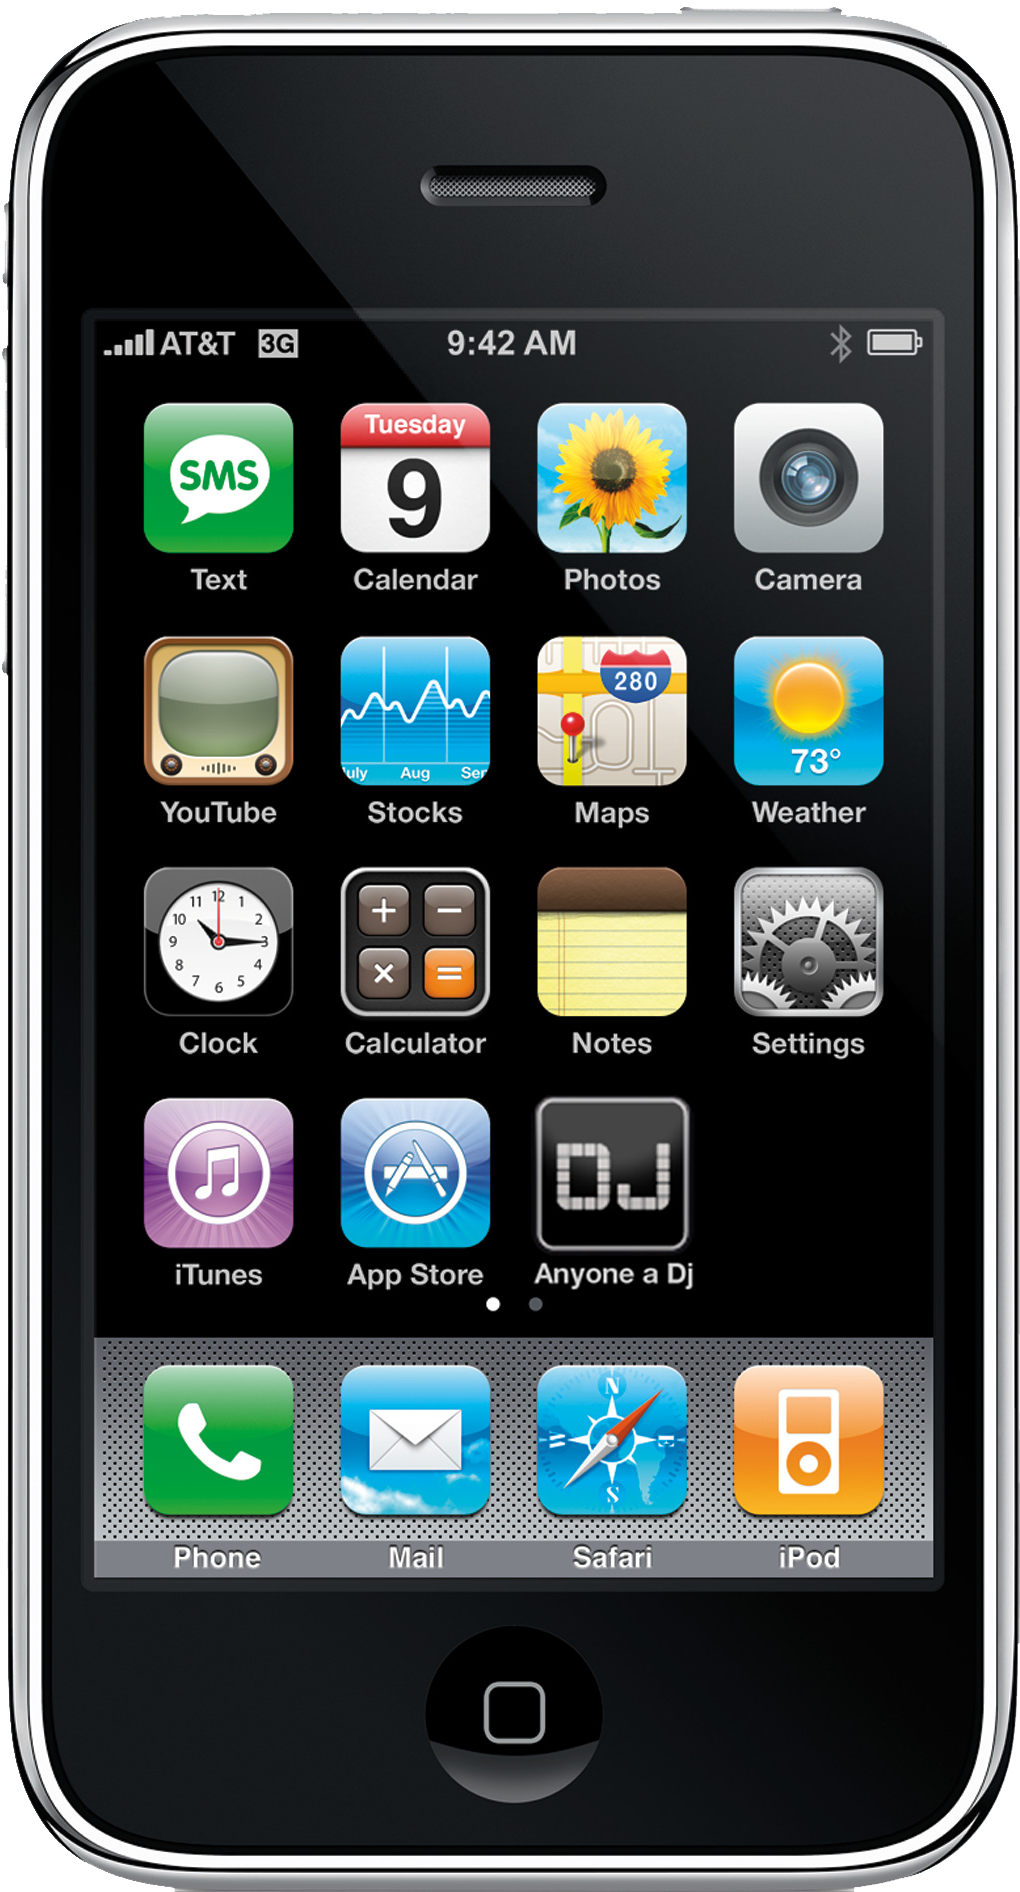 Hãy xem hình ảnh iPhone trong định dạng PNG để thấy rõ độ nét cao của nó và sự chân thực trong màu sắc. 